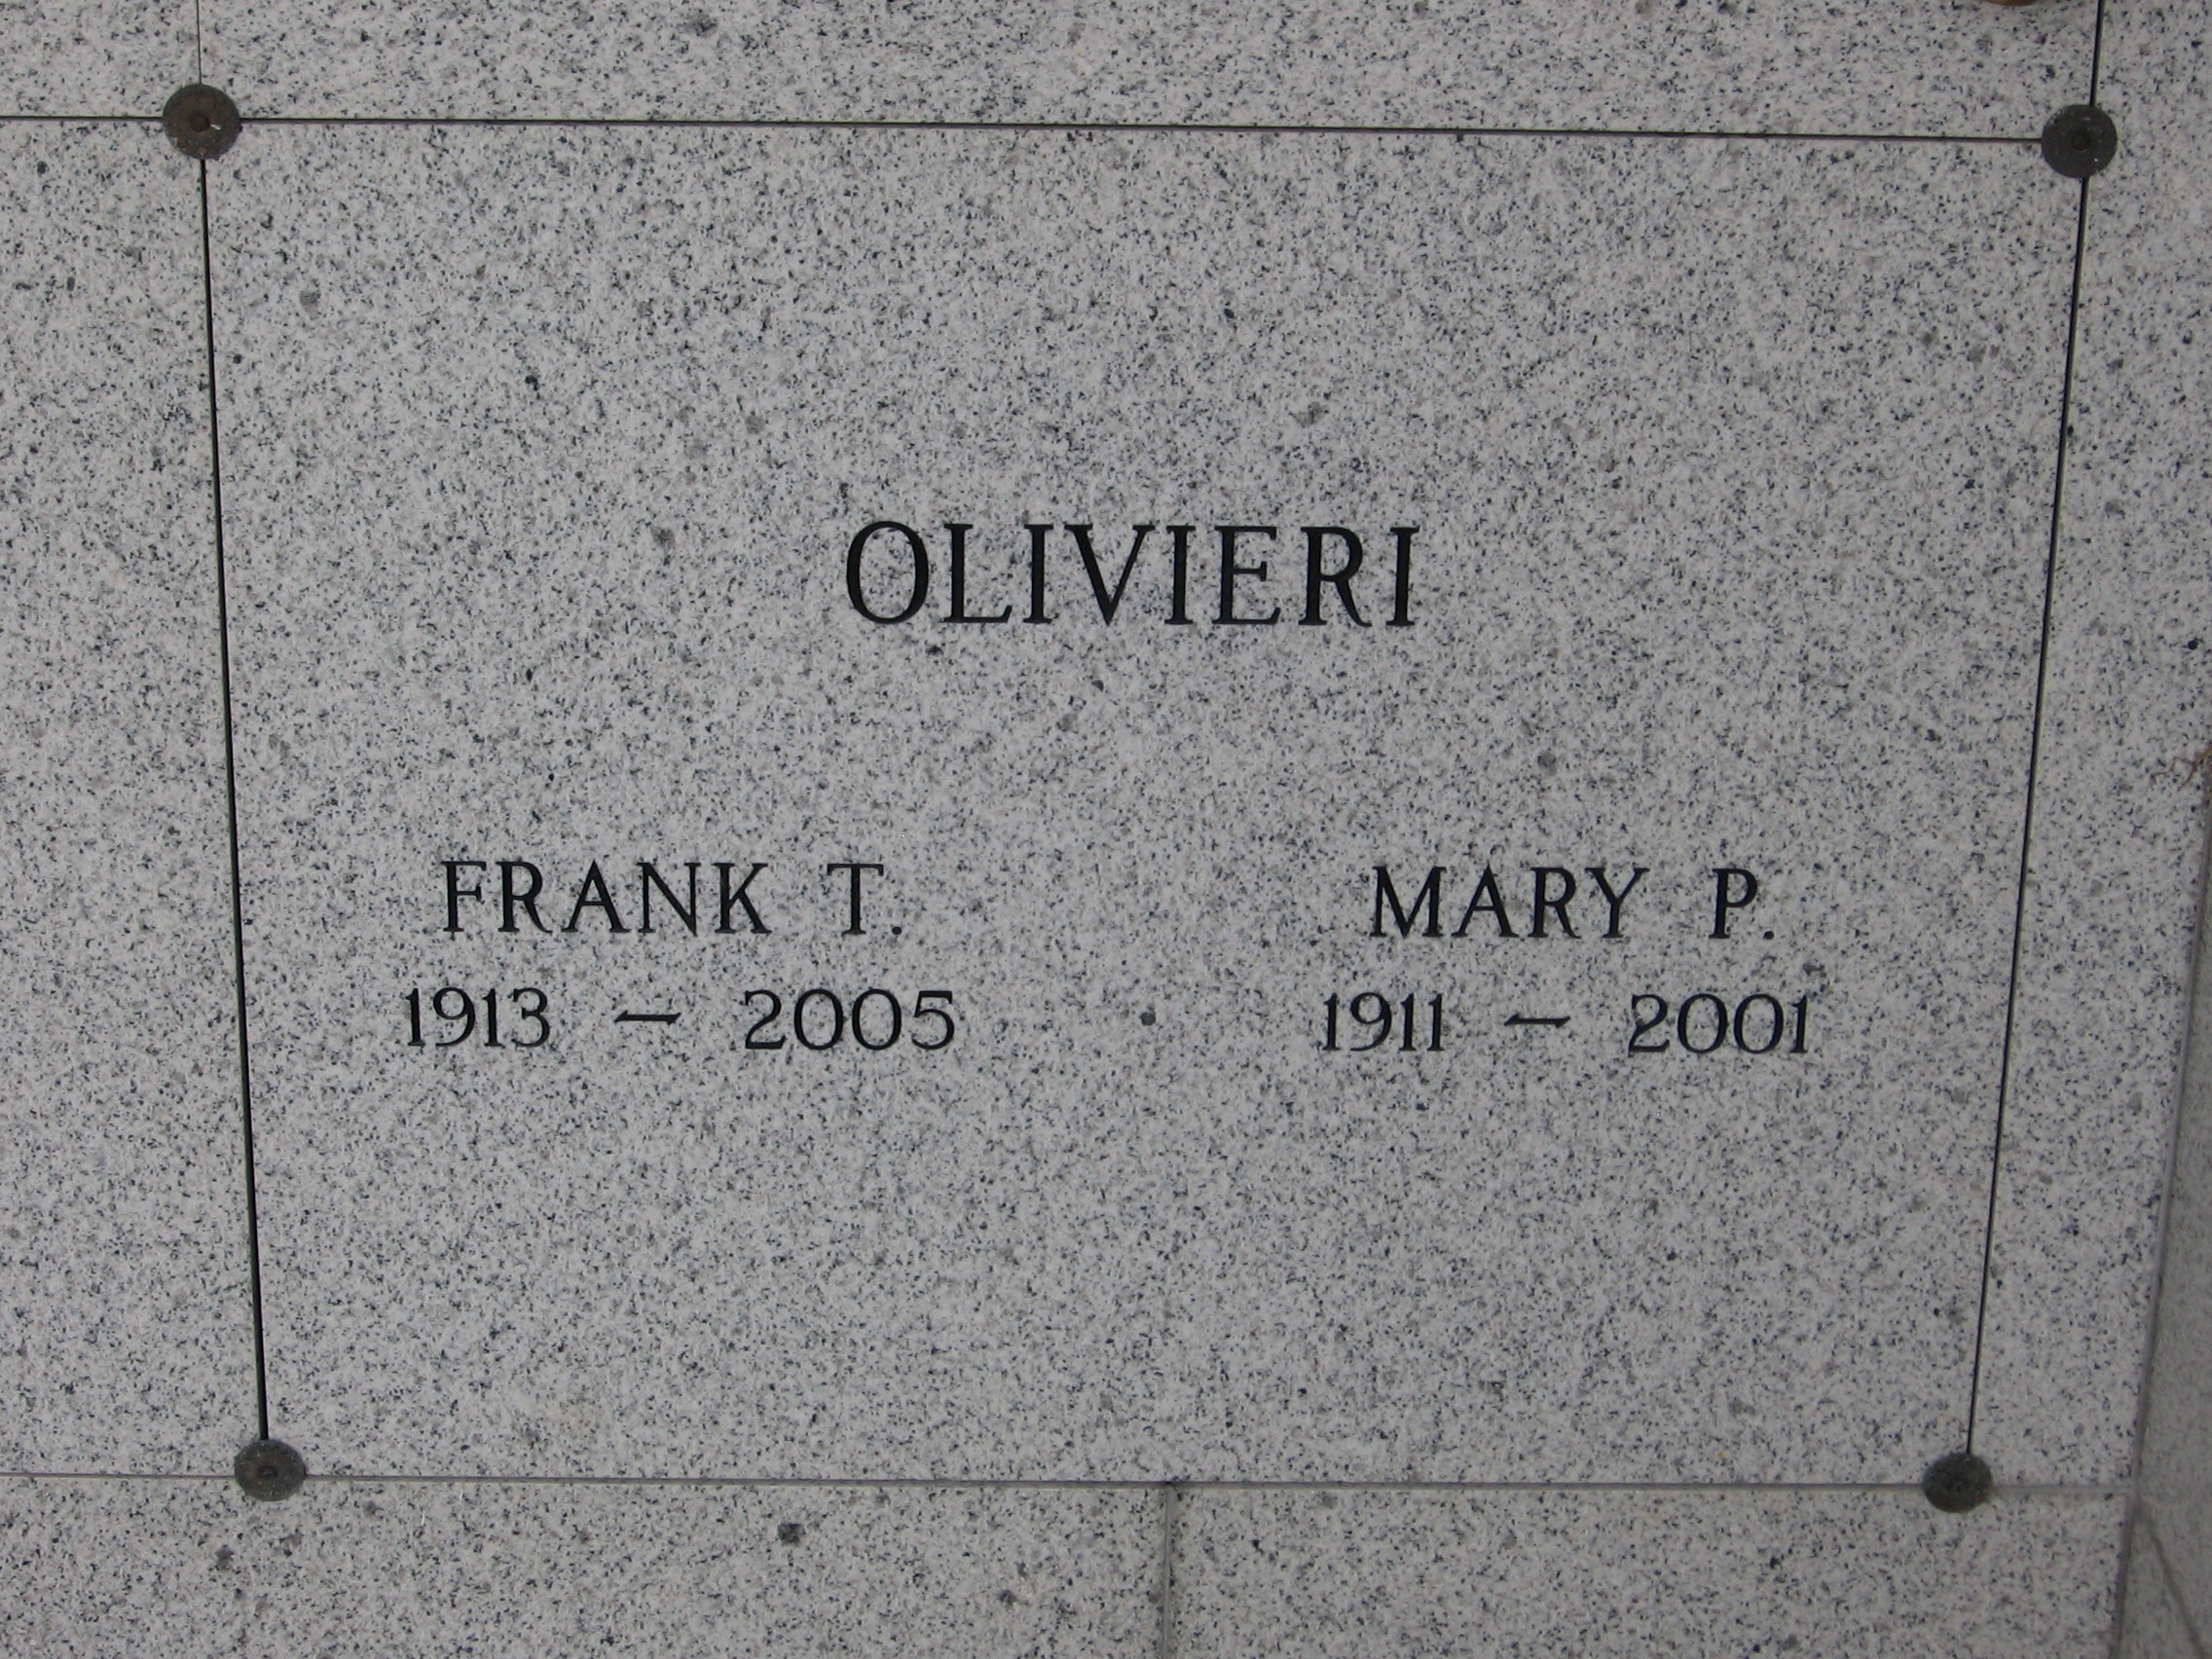 Frank T Olivieri